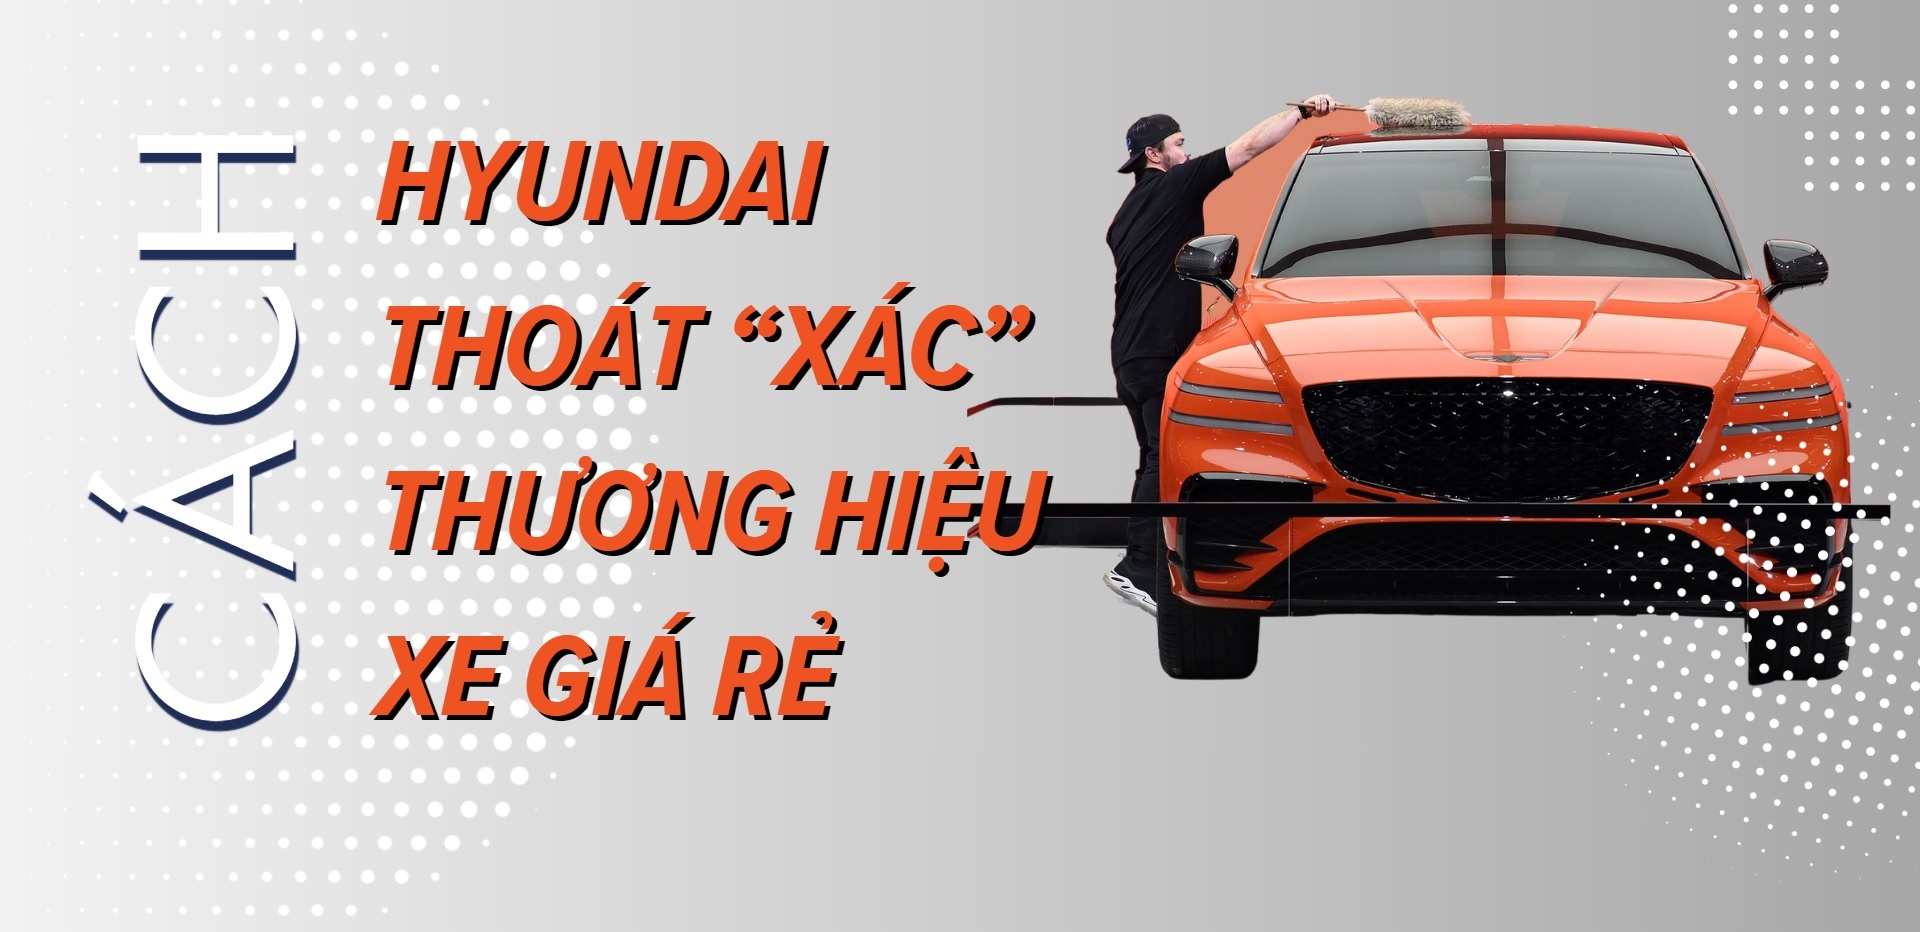 [Longform] Cách Hyundai thoát “xác” thương hiệu xe giá rẻ